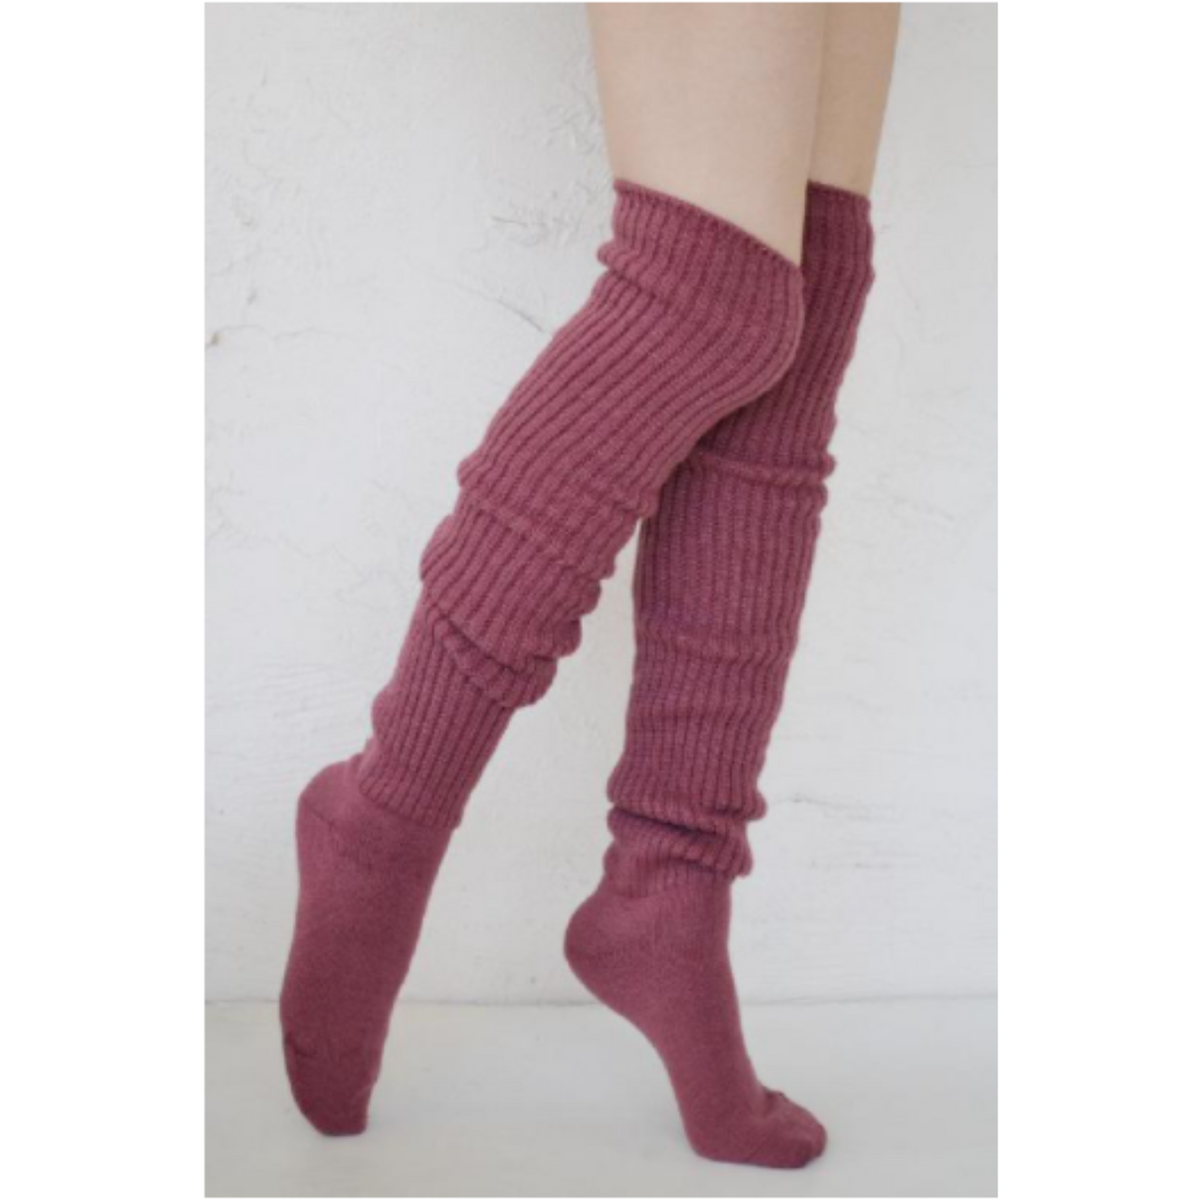 Tabbisocks Scrunchy Over the Knee women&#39;s socks shown in rose color on model.